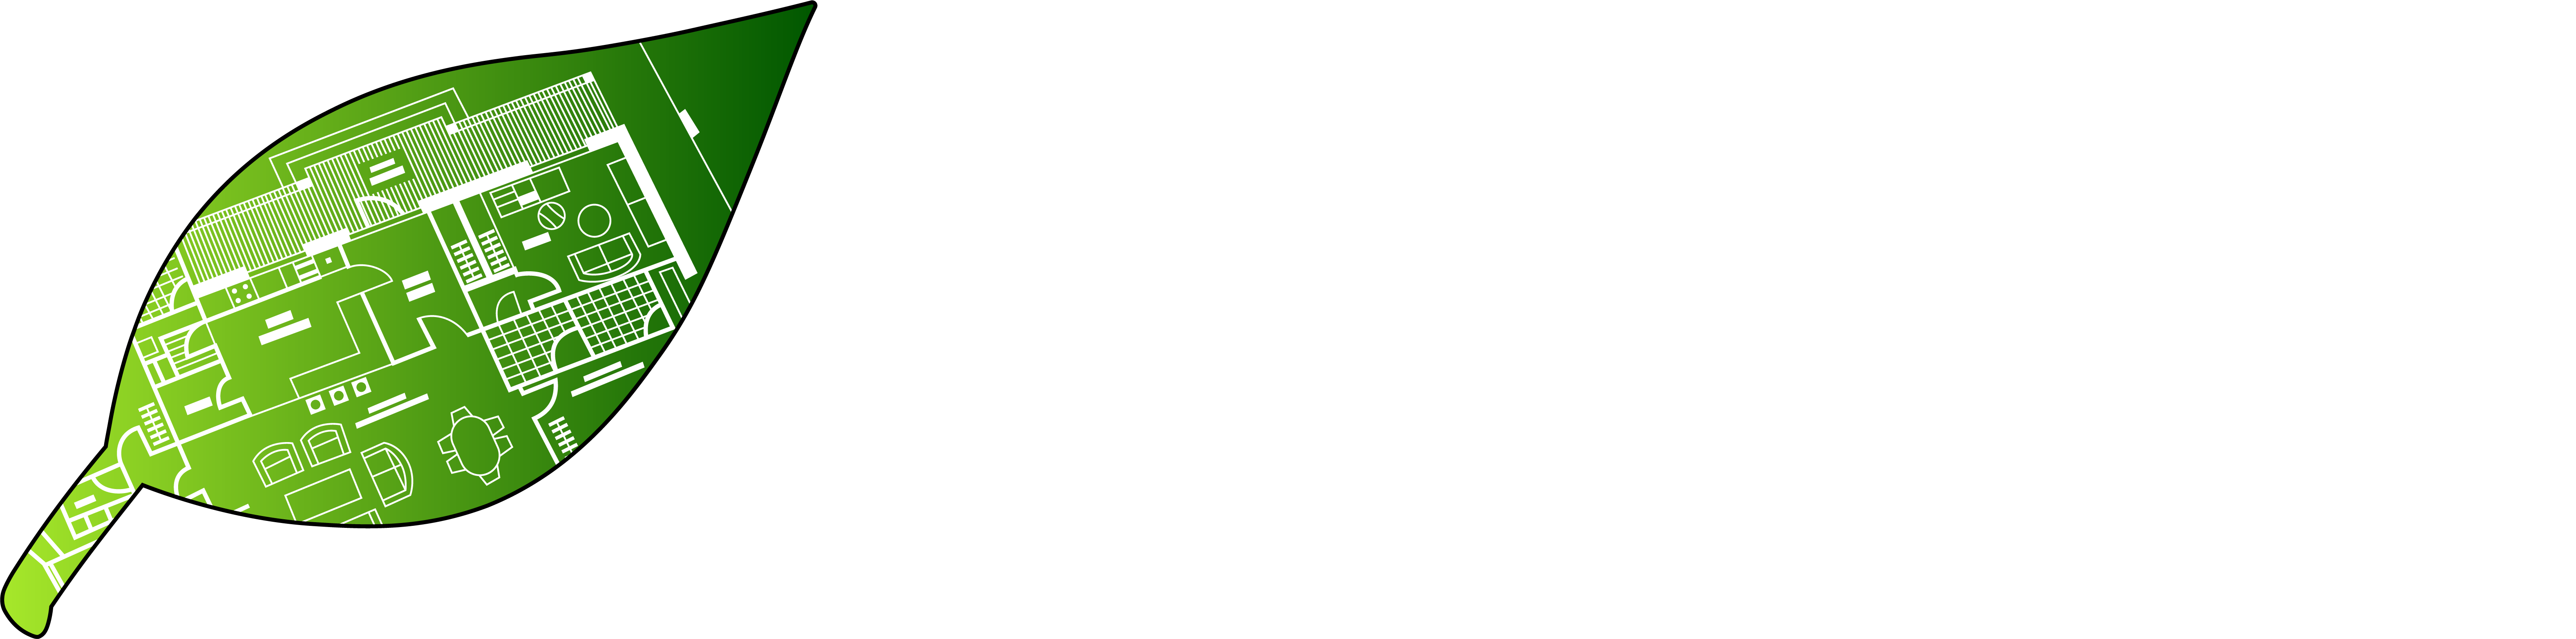 e-PlanSoft White_Black Leaf Border